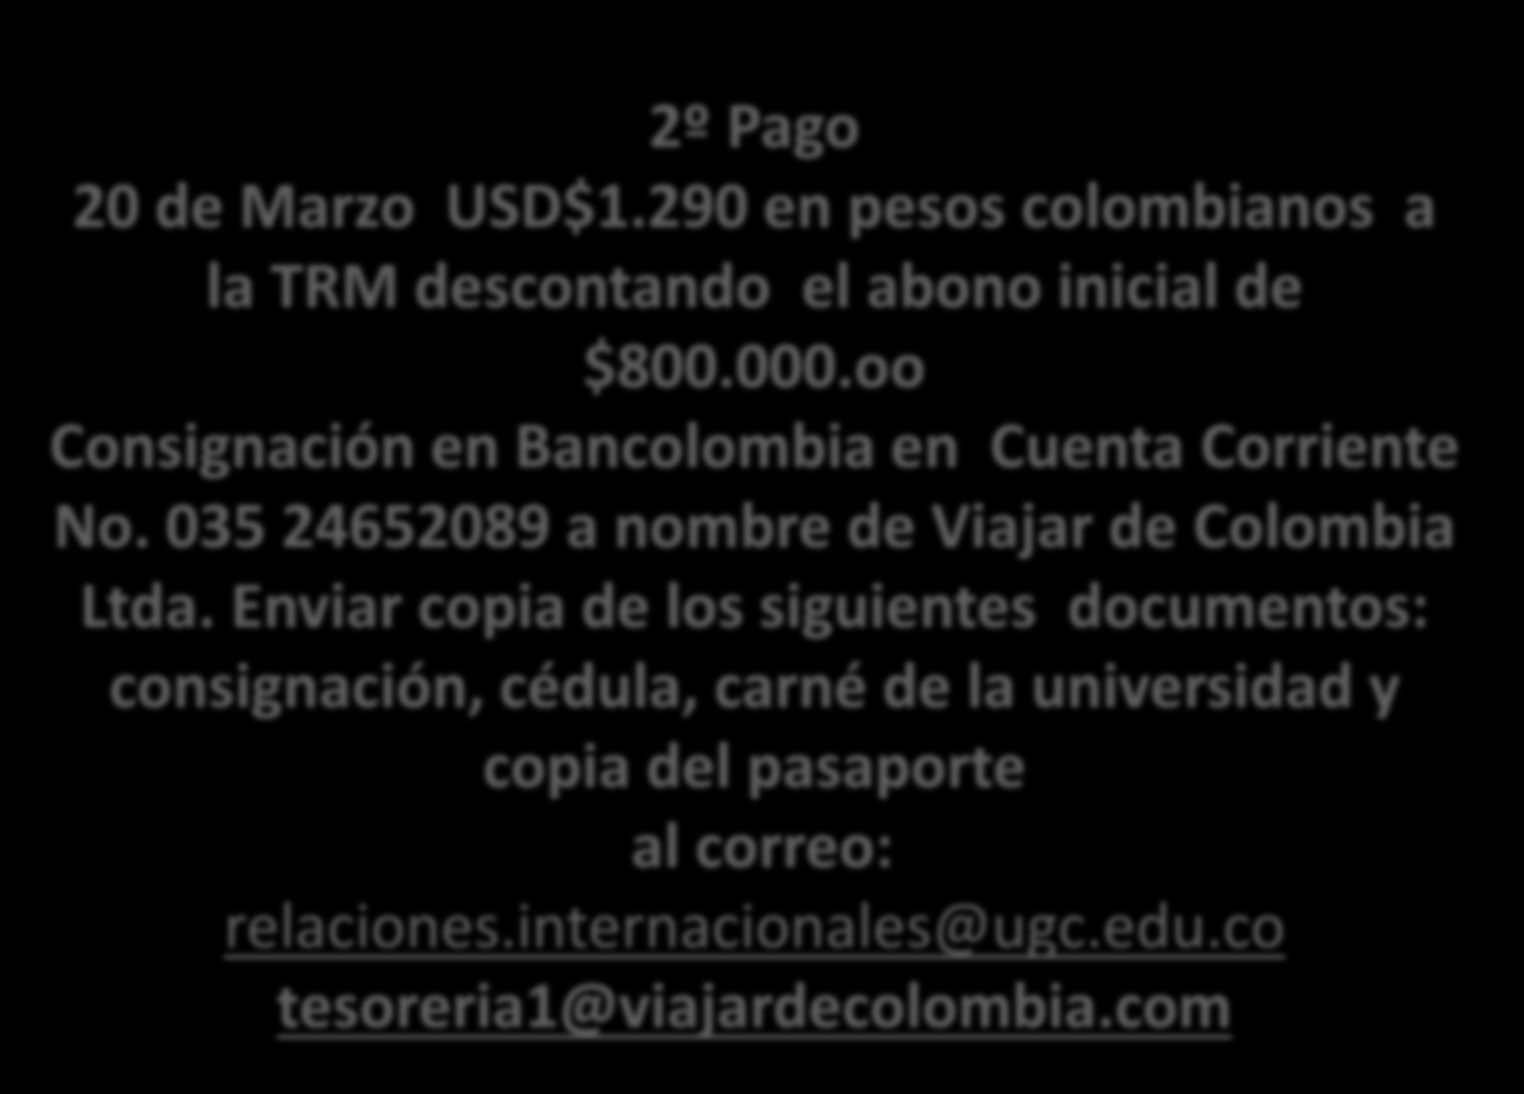 PROCEDIMIENTOS DE PAGOS 2º Pago 20 de Marzo USD$1.290 en pesos colombianos a la TRM descontando el abono inicial de $800.000.oo Consignación en Bancolombia en Cuenta Corriente No.